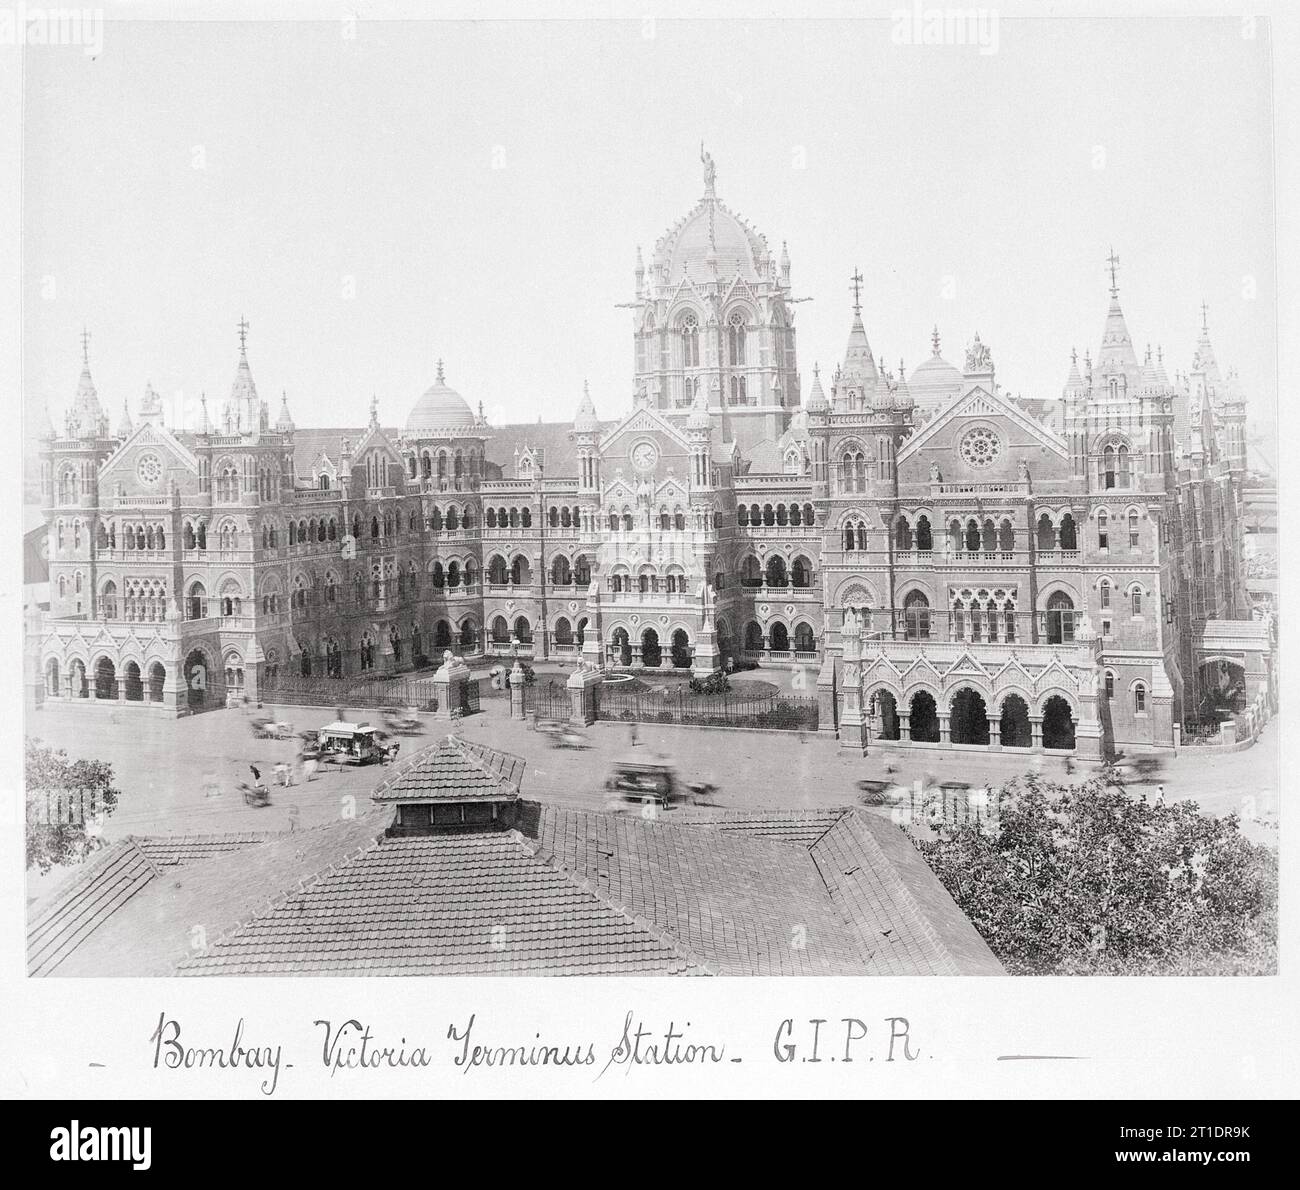 Bombay, Victoria Terminus Station-G.I.P.R, fine anni '1860 Foto Stock